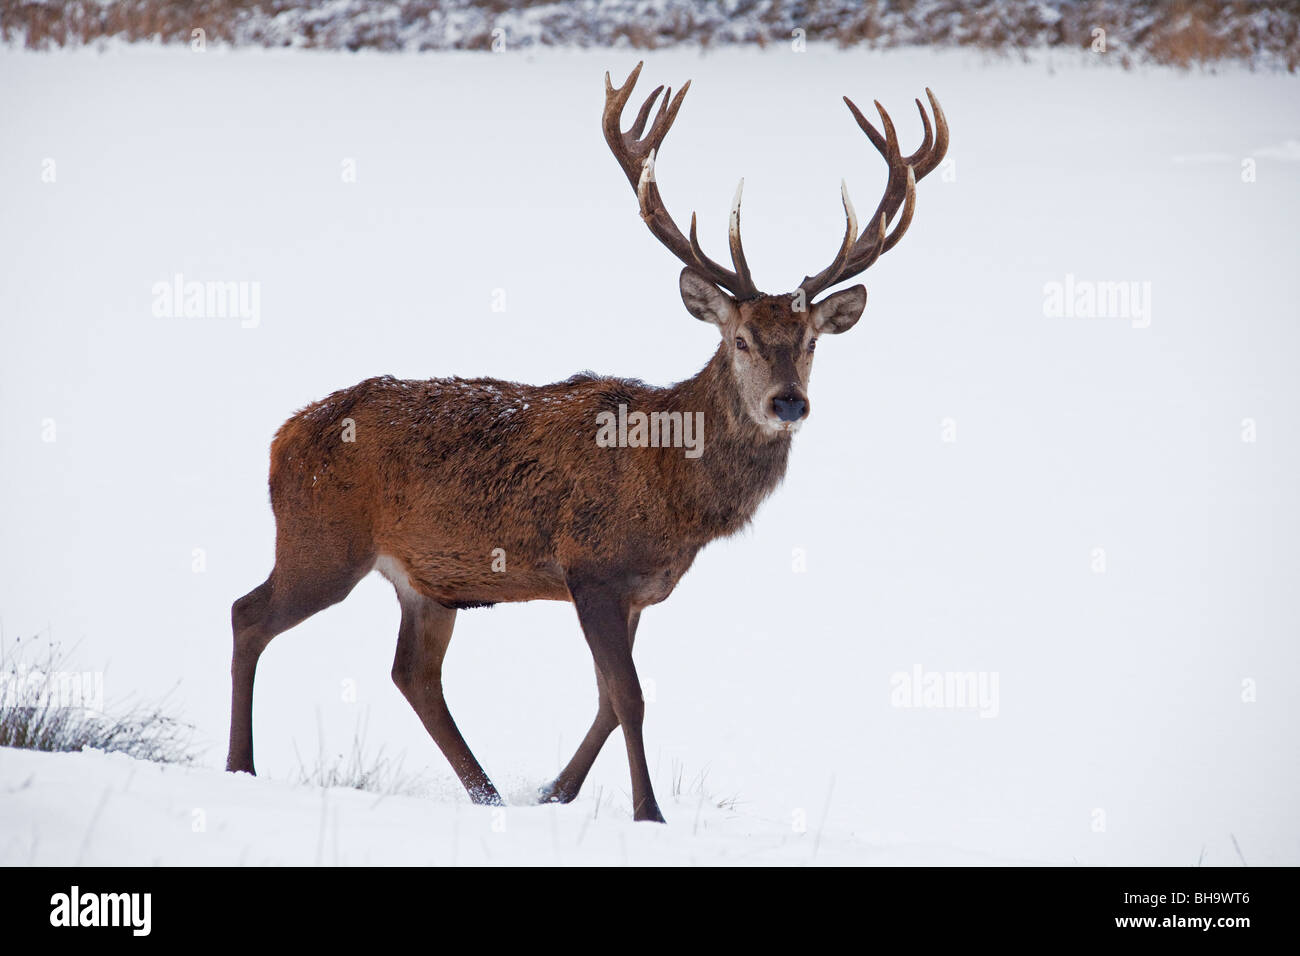 Il cervo (Cervus elaphus) feste di addio al celibato nella neve in inverno, Germania Foto Stock